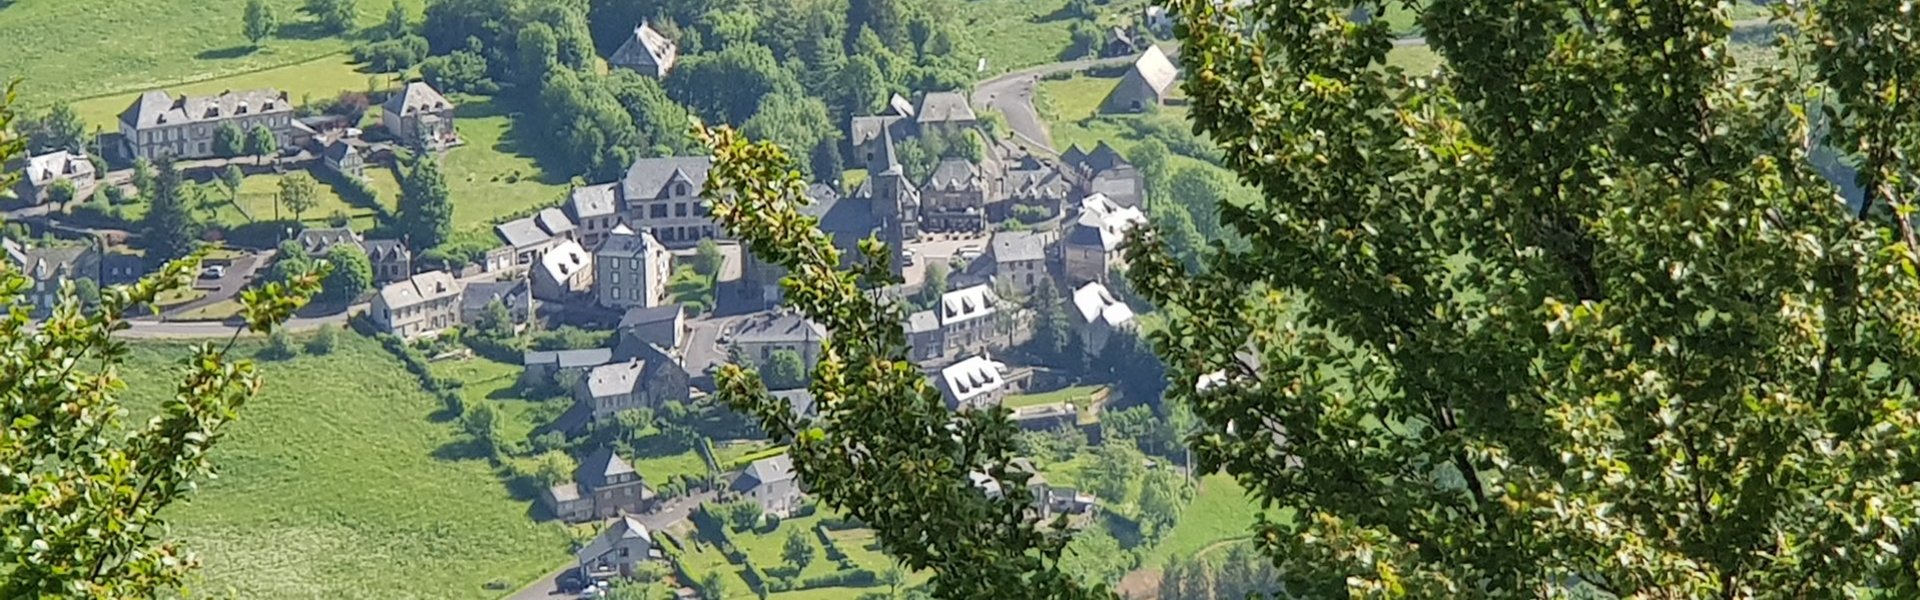 Maison Site Falgoux Montagne Neige Cantal Auvergne